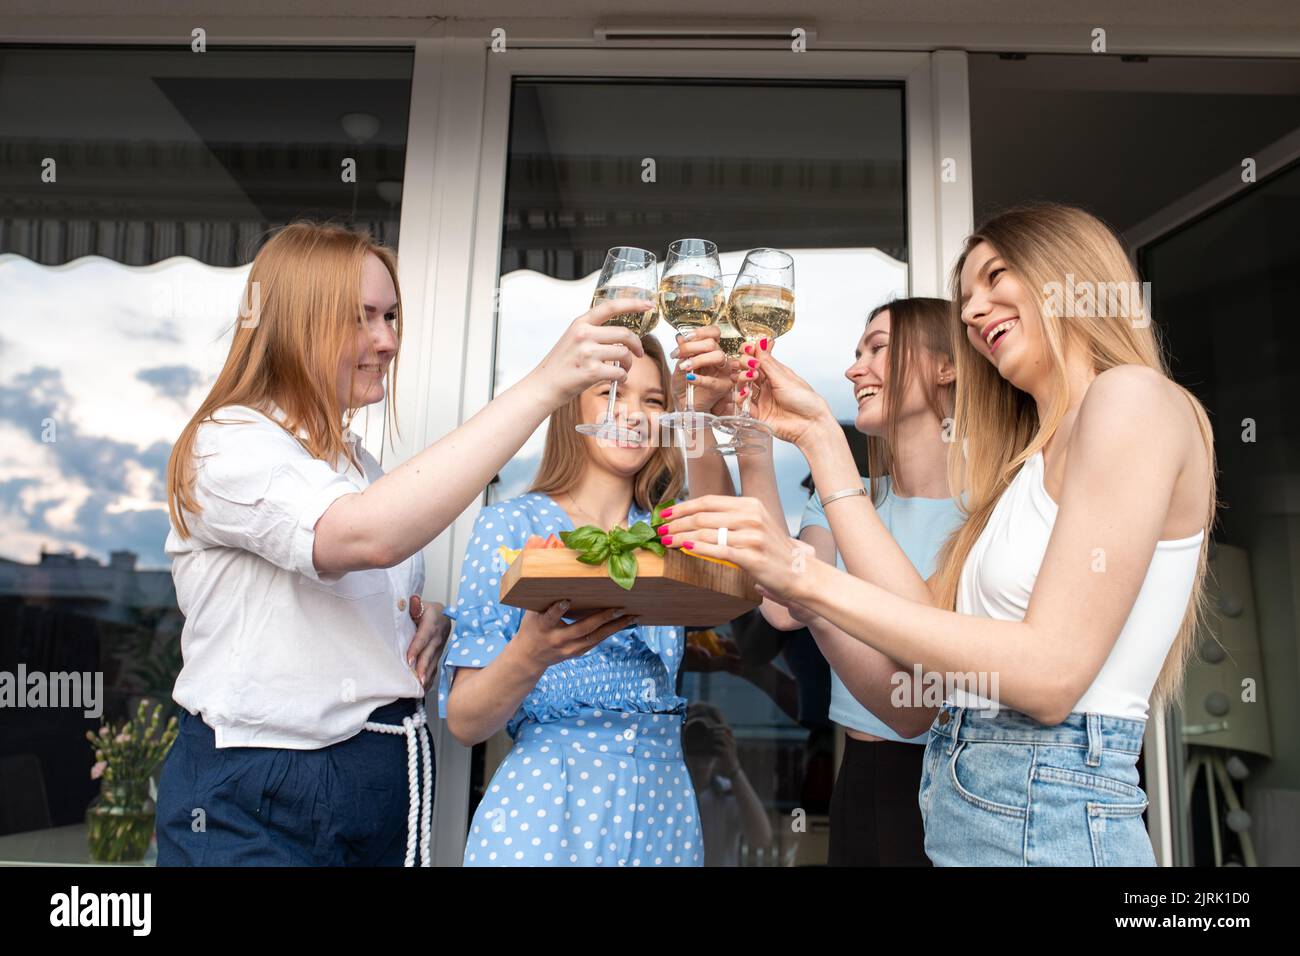 Porträt von jungen, glücklichen, gutaussehenden Frauen, die Gemüse, klirrende Gläser Weißwein in der Nähe des Hauses halten. Stockfoto